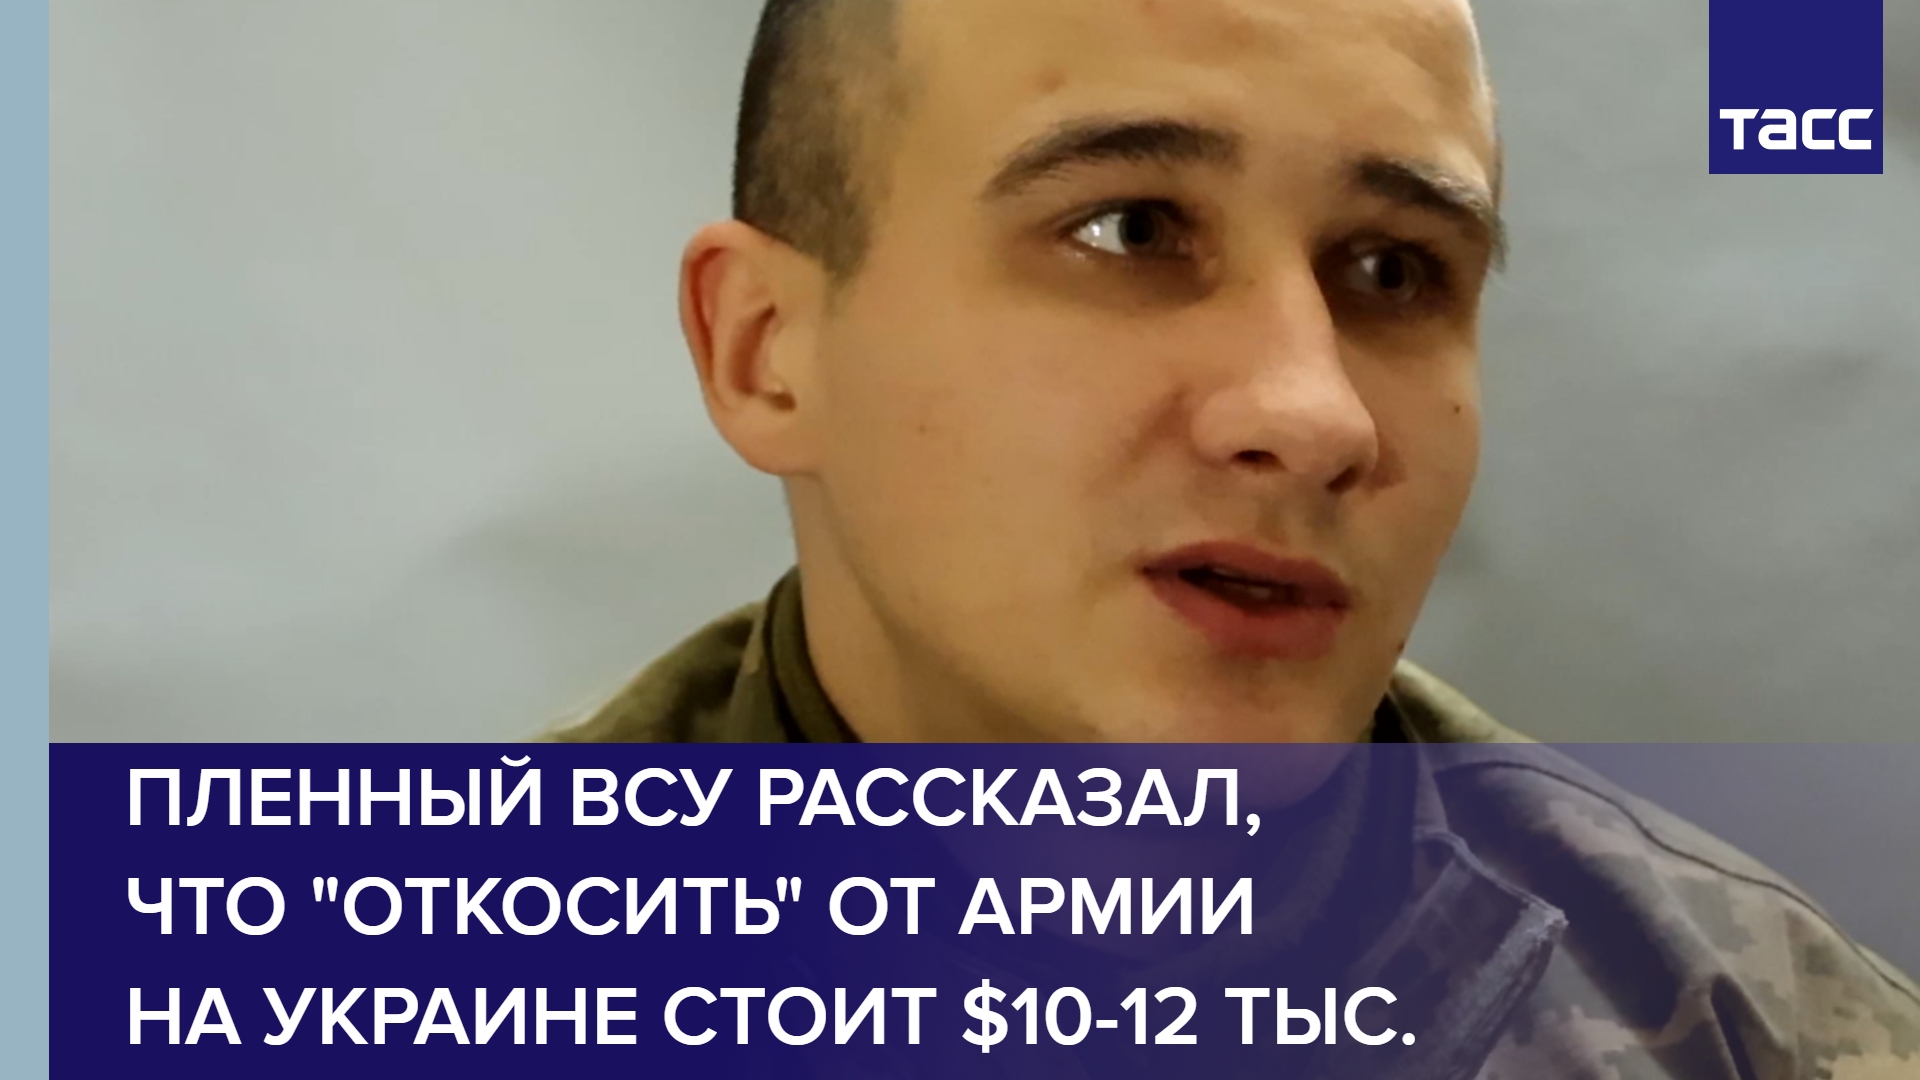 Пленный ВСУ рассказал, что "откосить" от армии на Украине стоит $10-12 тыс. #shorts